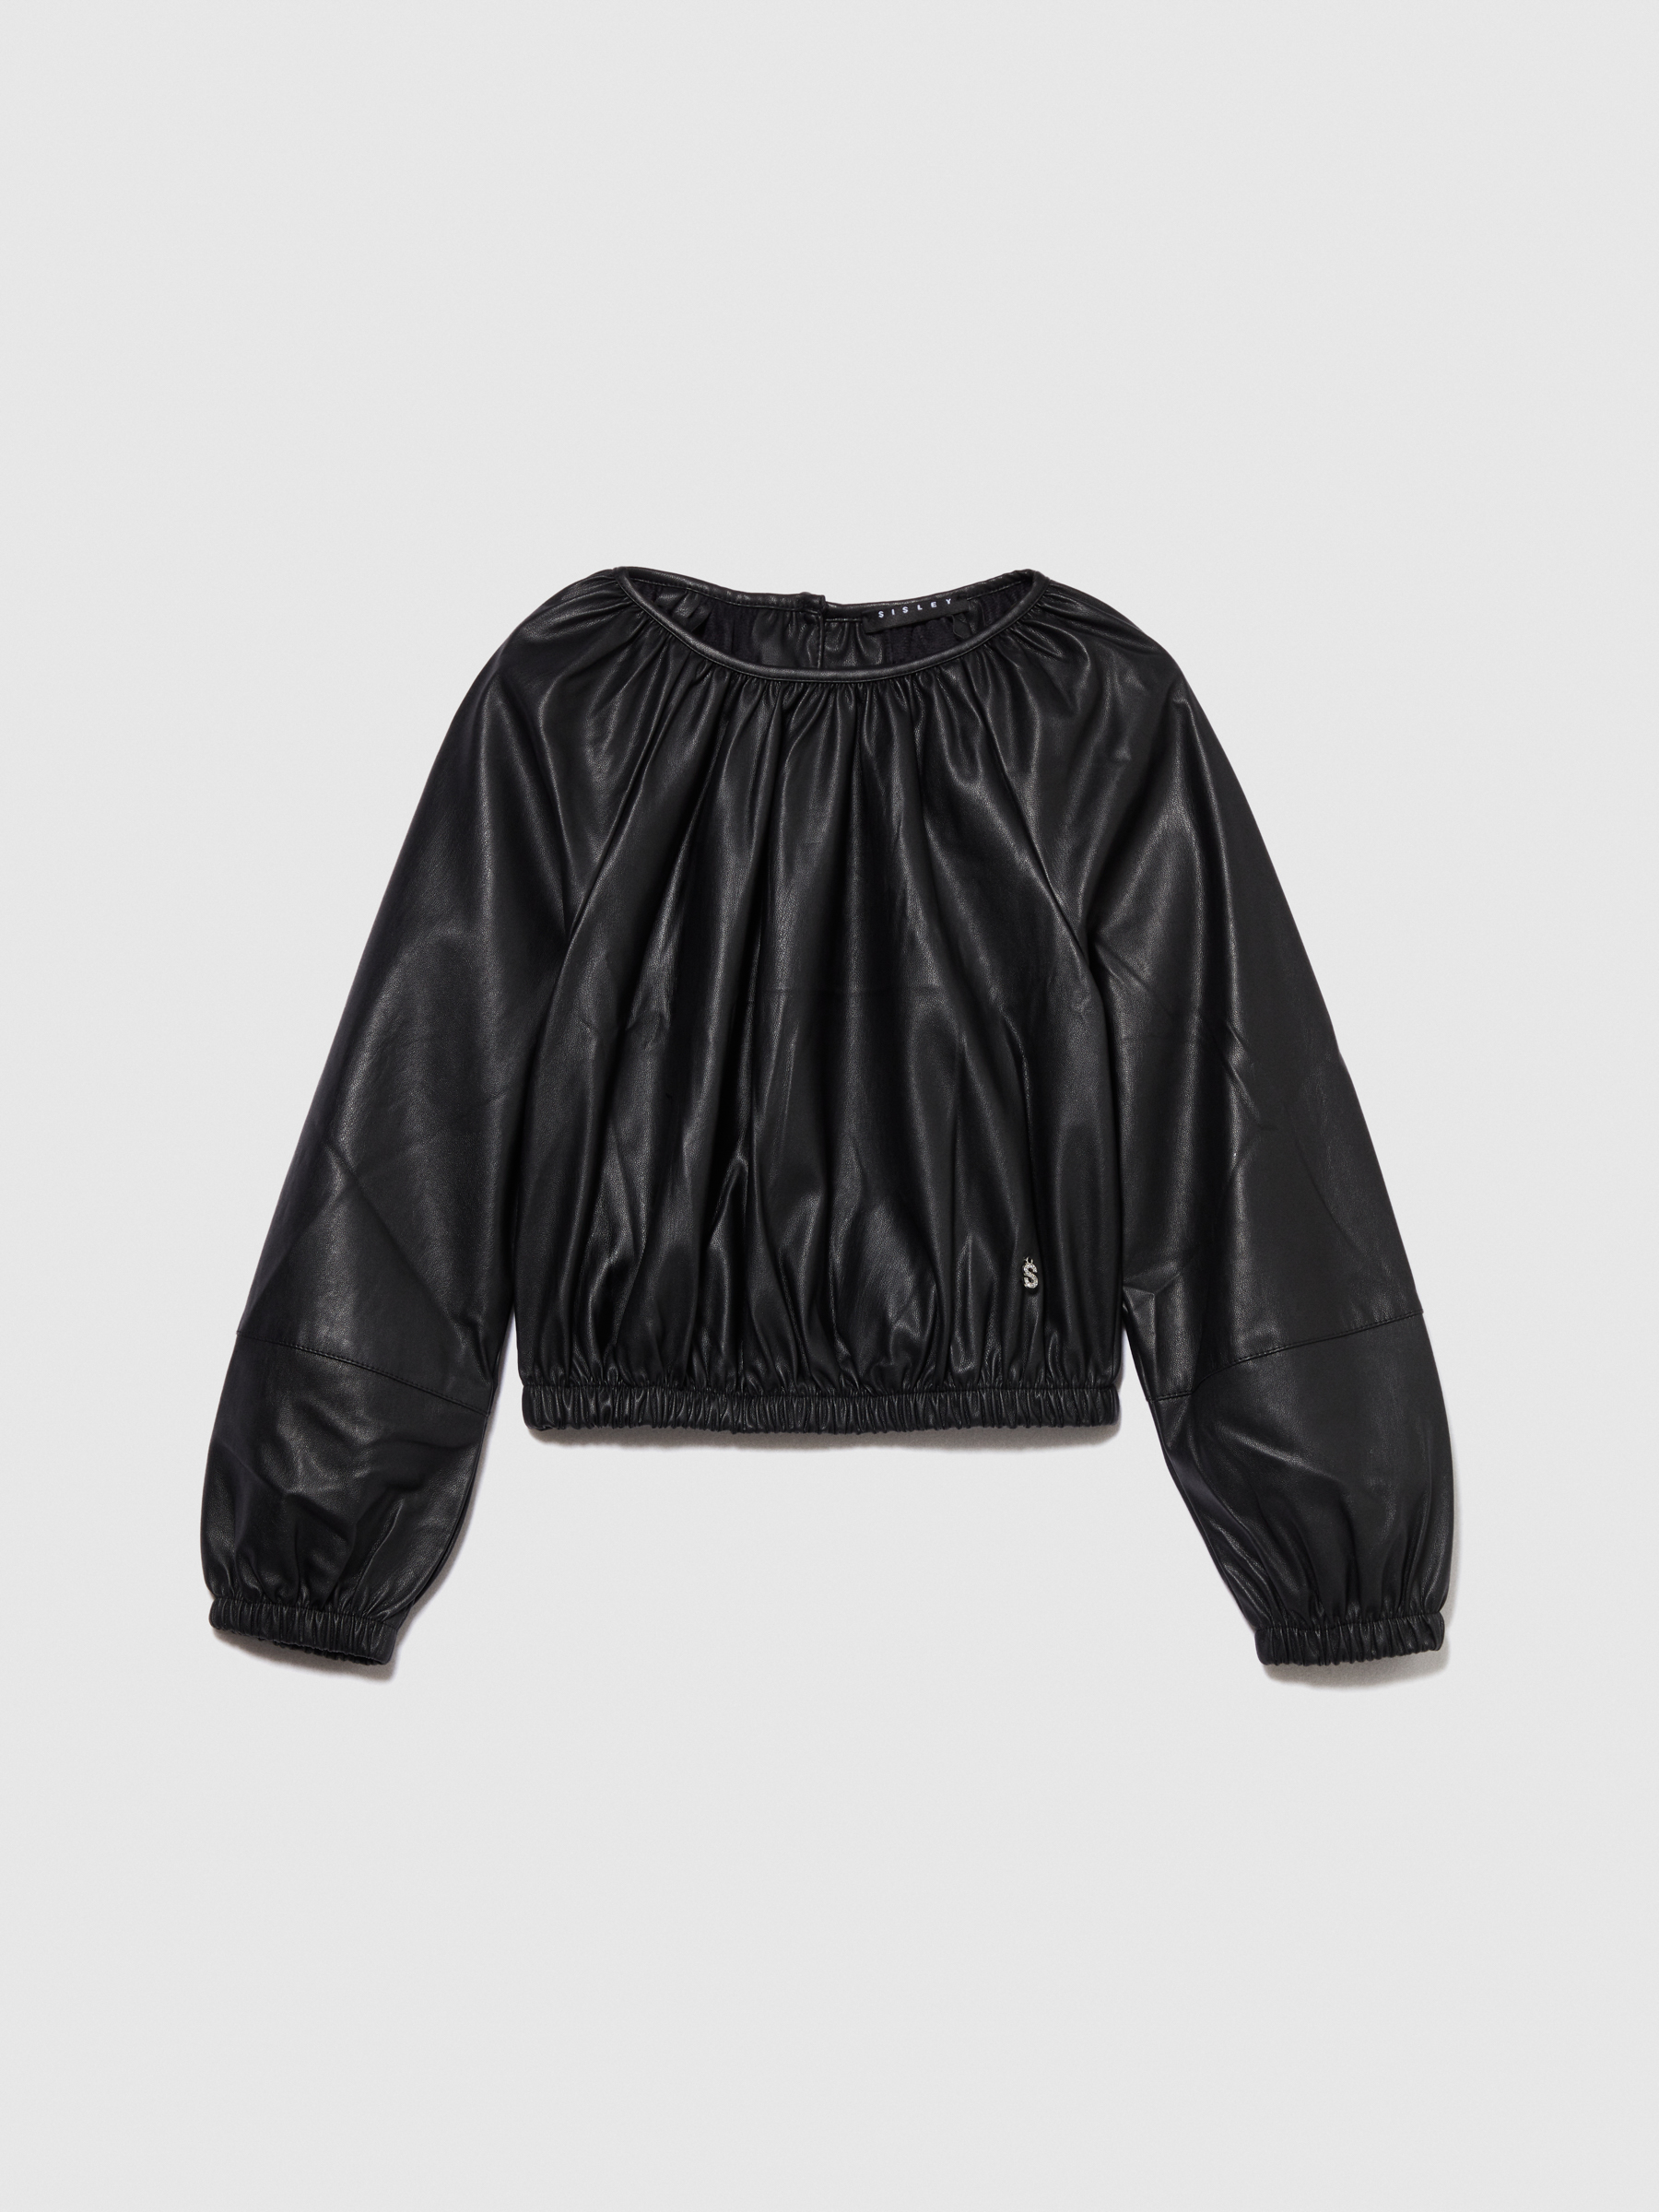 Sisley Young - Cropped Blouse, Woman, Black, Size: XL